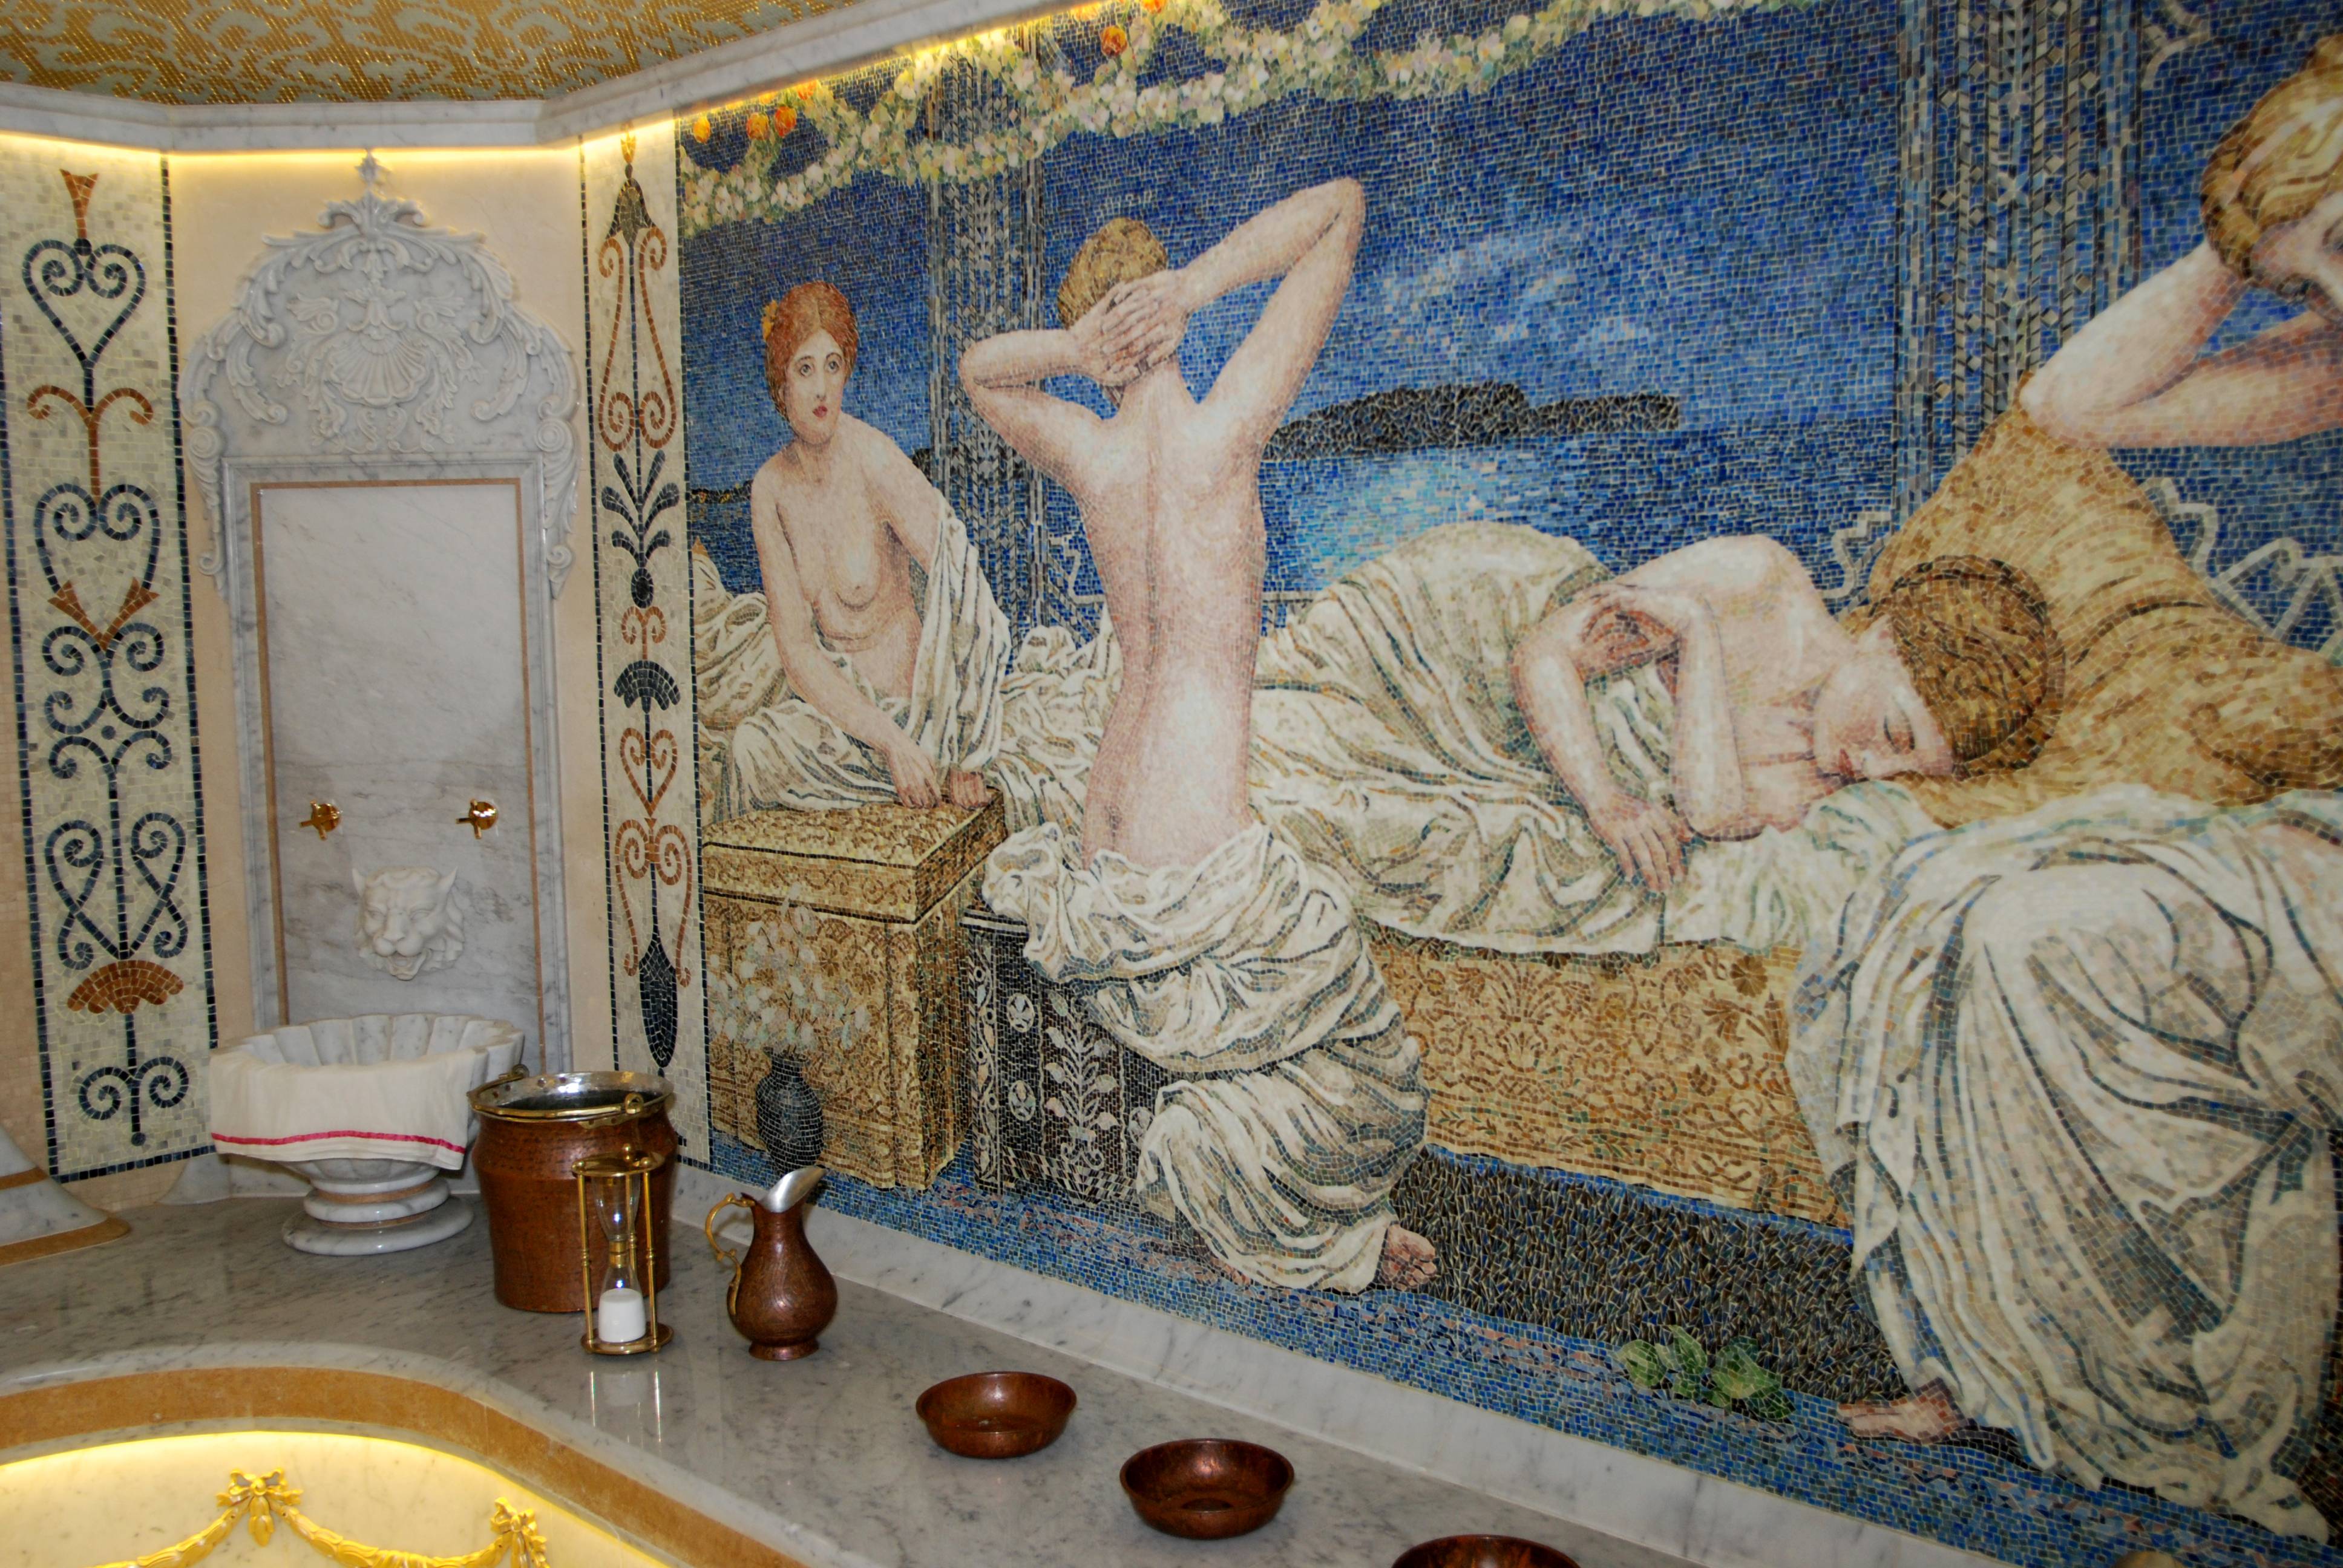 Ванна из мозаики, фото. мозаика в ванной: виды, материалы, цвета, формы, дизайн, выбор места отделки